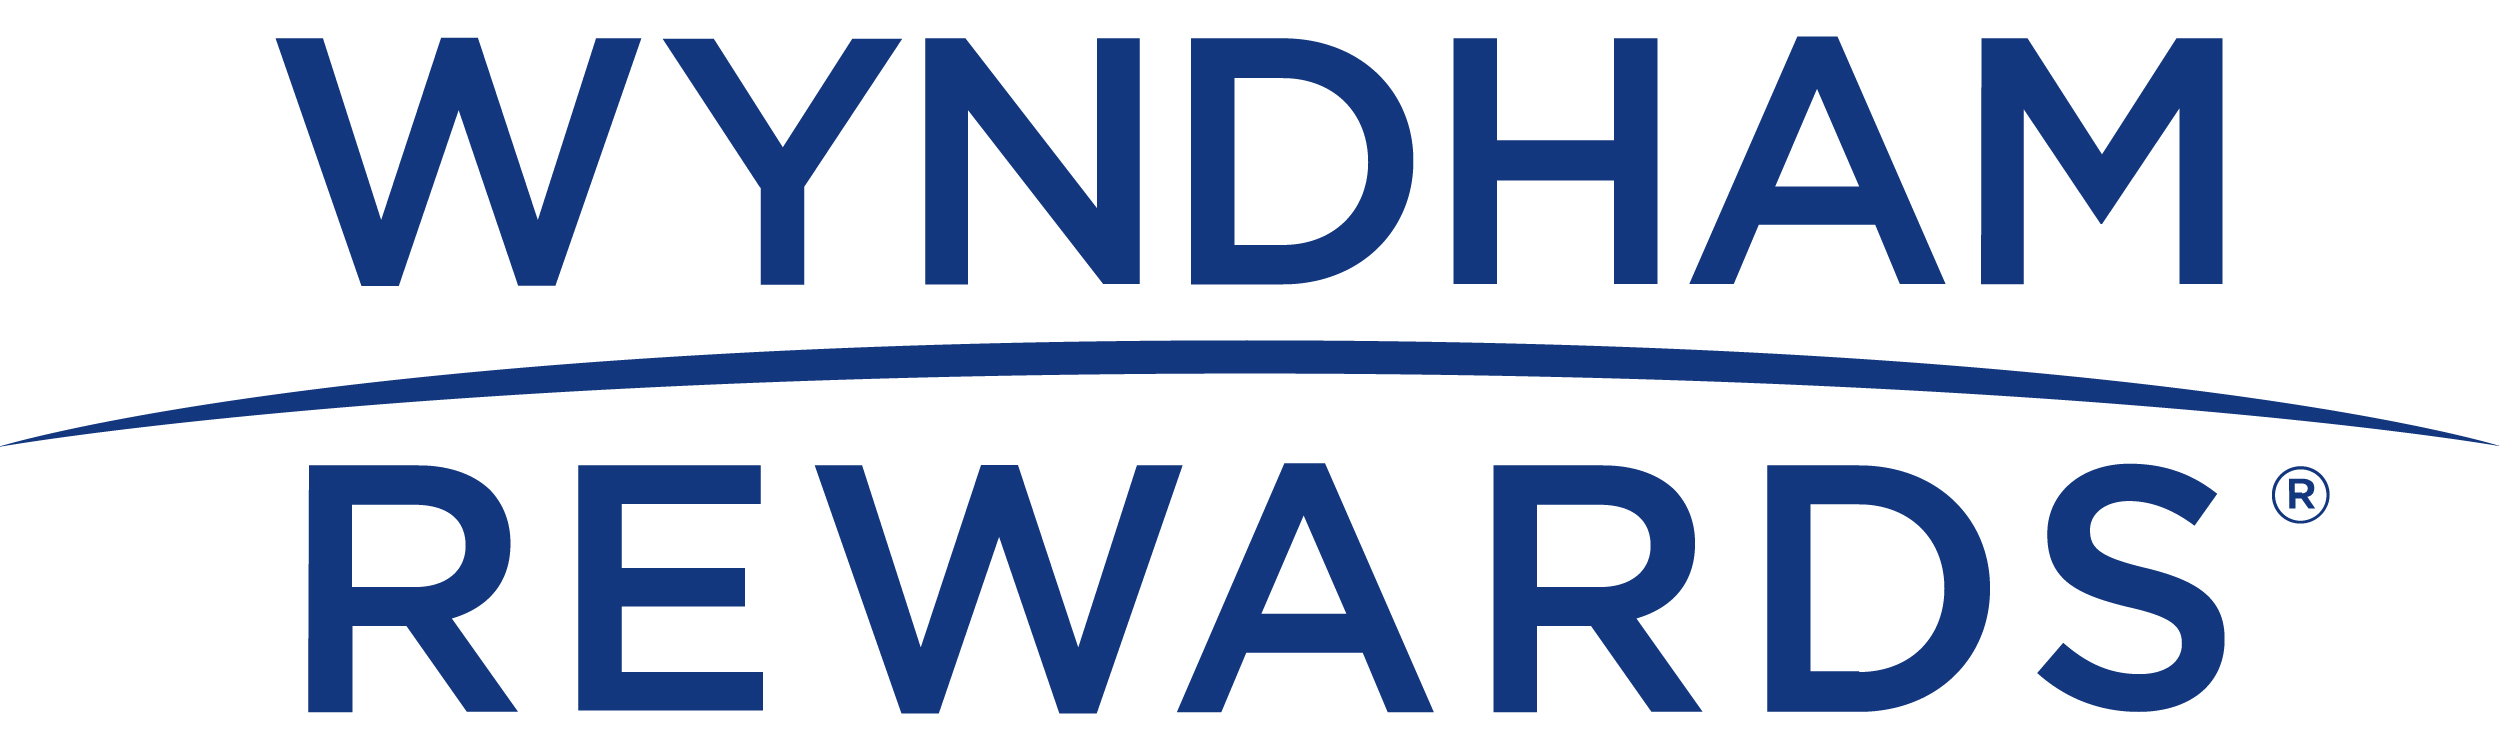 Wyndham Rewards - h-hotels.com - Offizielle Webseite